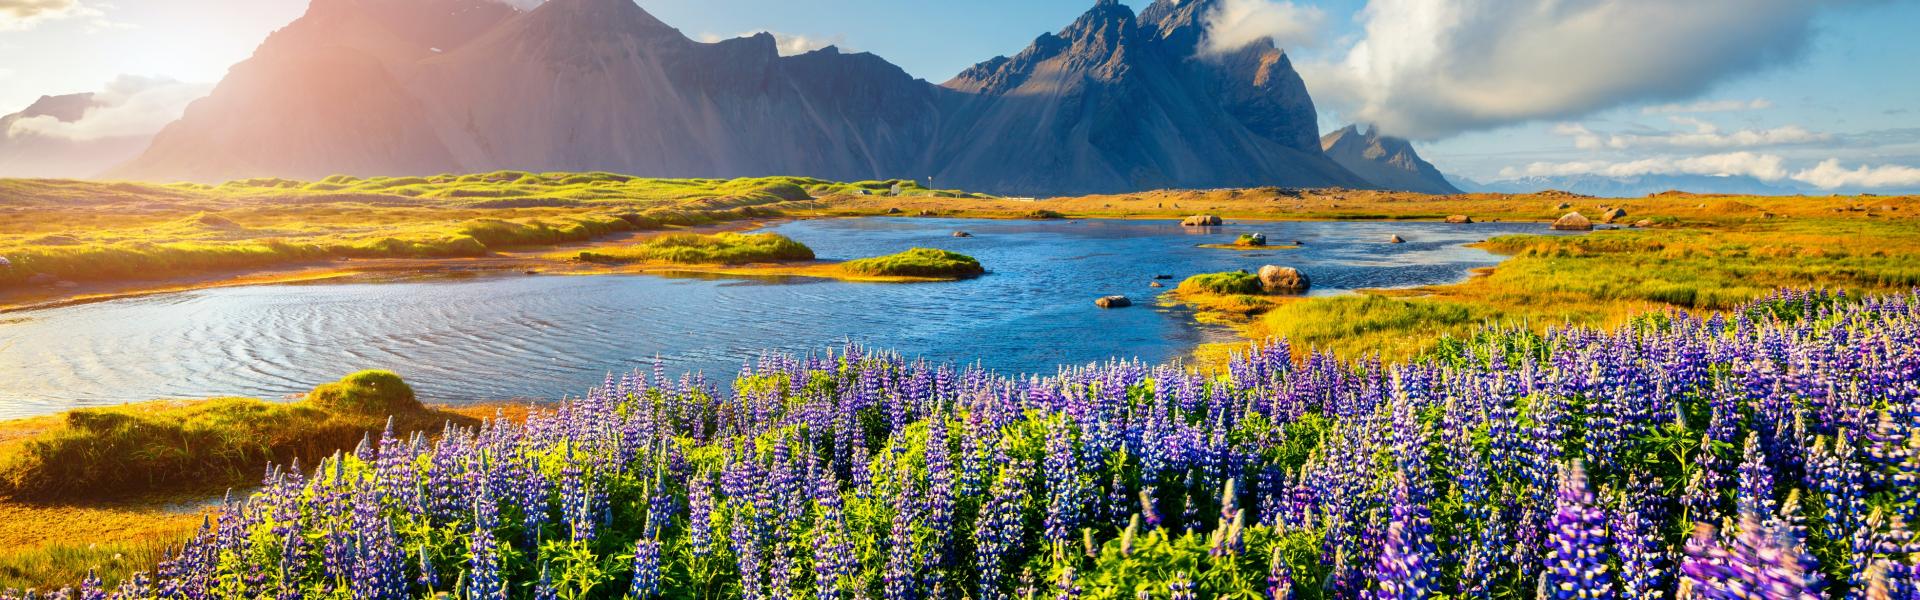 Islands makalösa naturlandskap måste upplevas - Casamundo